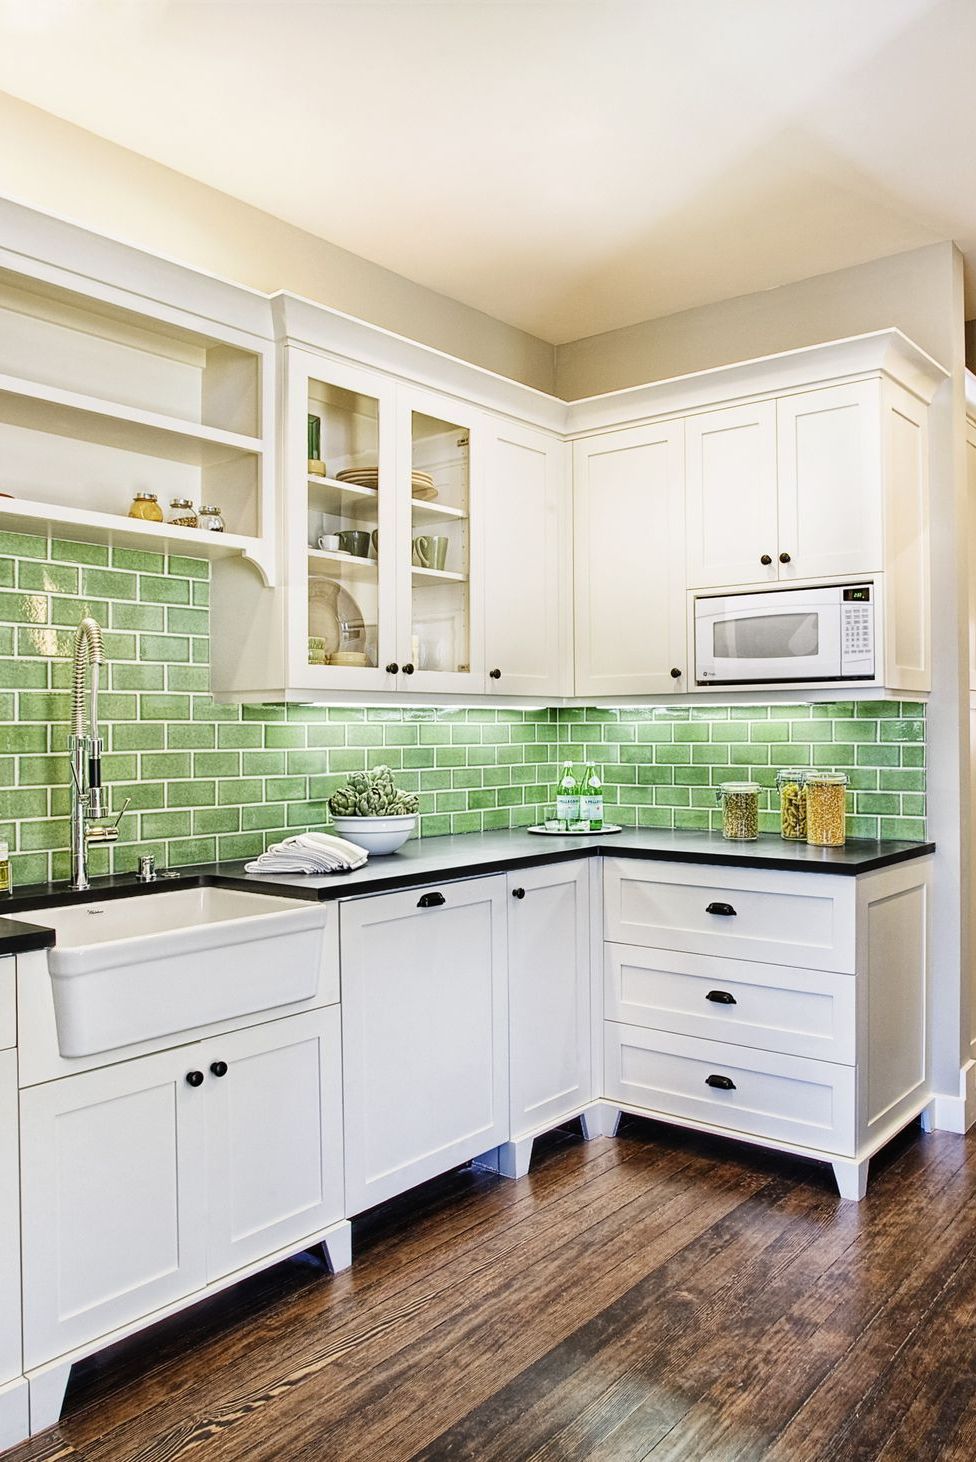 5 Awesome Kitchen Backsplash Tile Ideas